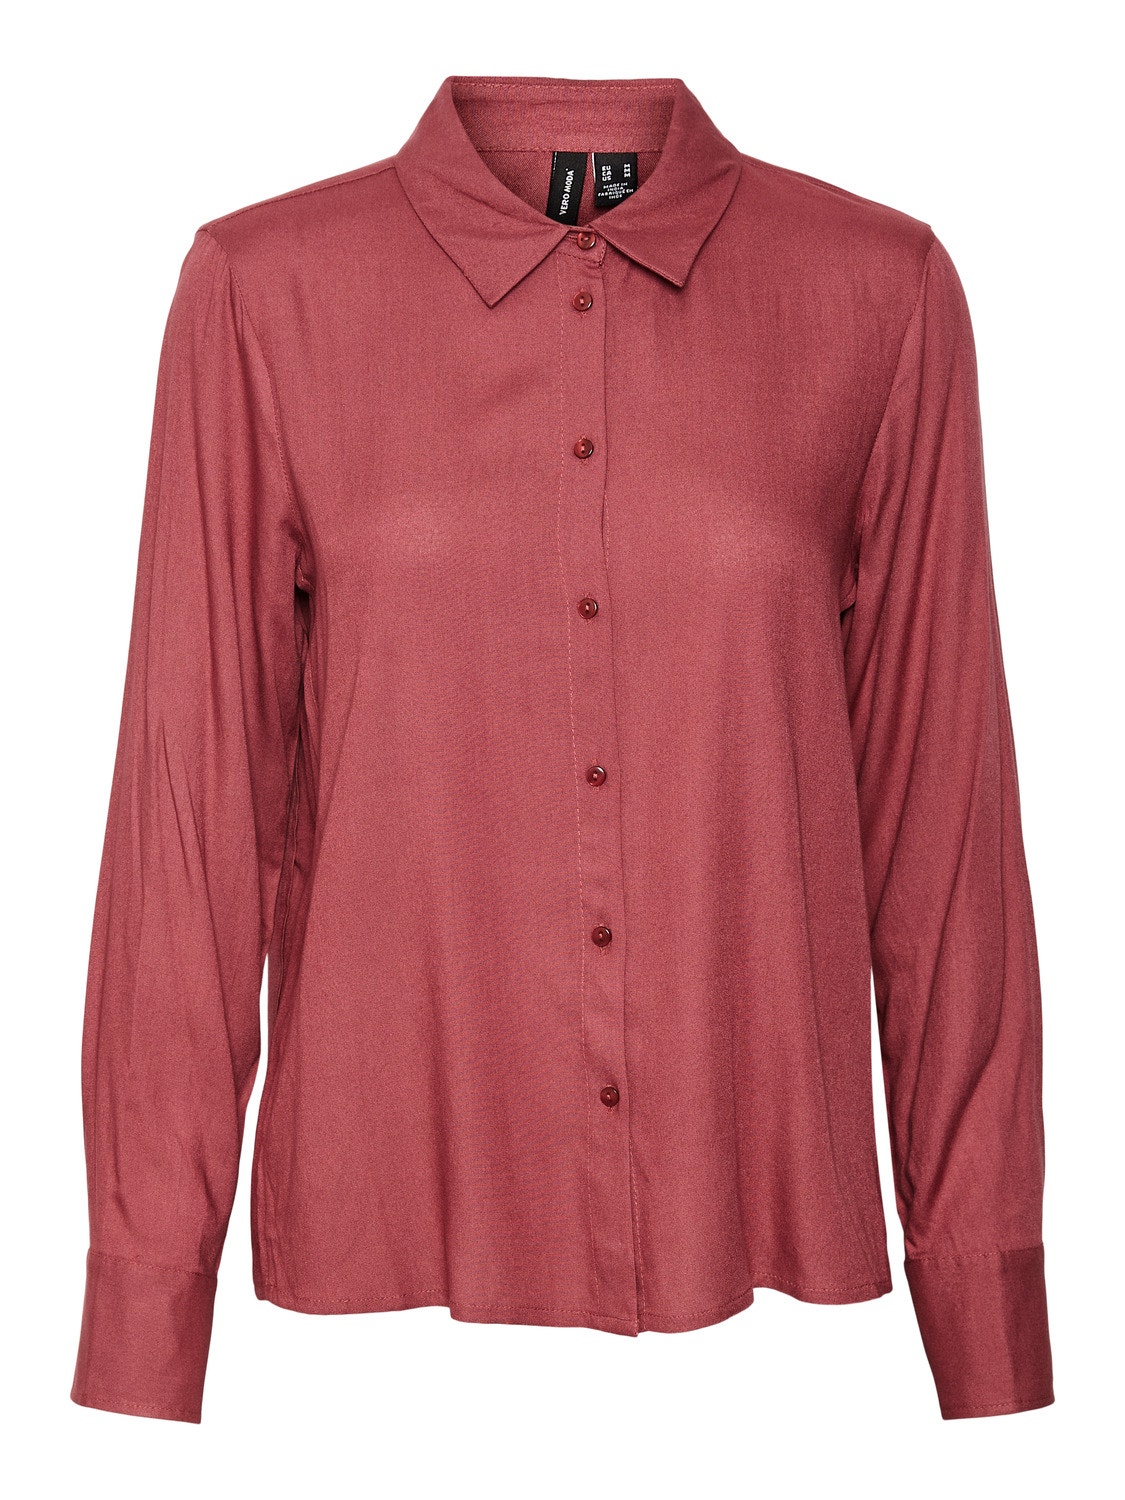 Vero Moda VMBEAUTY Camisas -Dry Rose - 10269526